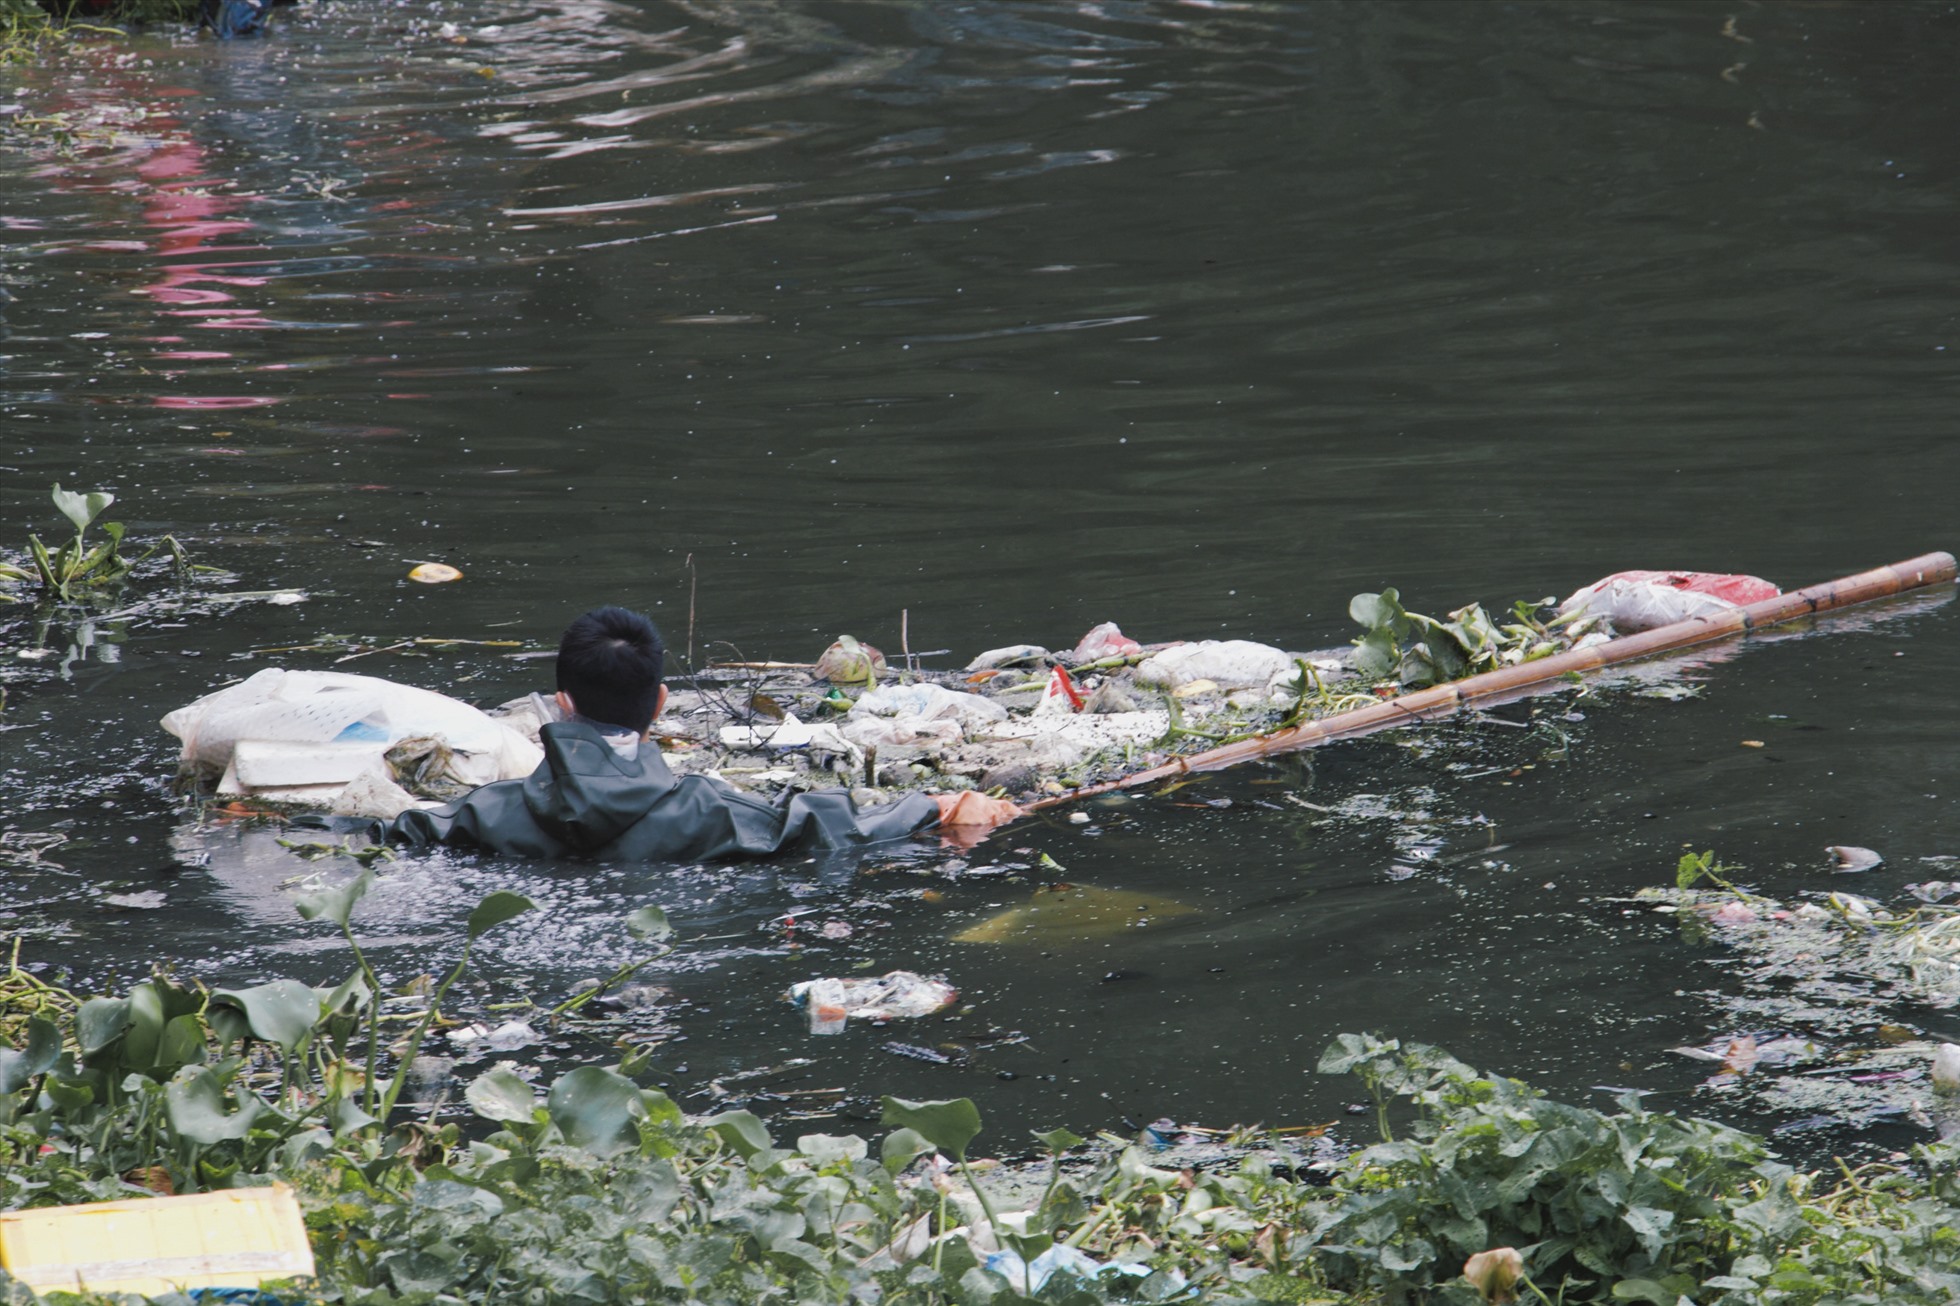 Các bạn trẻ trong nhóm Hà Nội Xanh tình nguyện lội mình xuống dòng nước bốc mùi, bất chấp rủi ro, nguy hiểm để nhặt rác, làm sạch dòng sông ô nhiễm. Ảnh: Hồng Ngọc